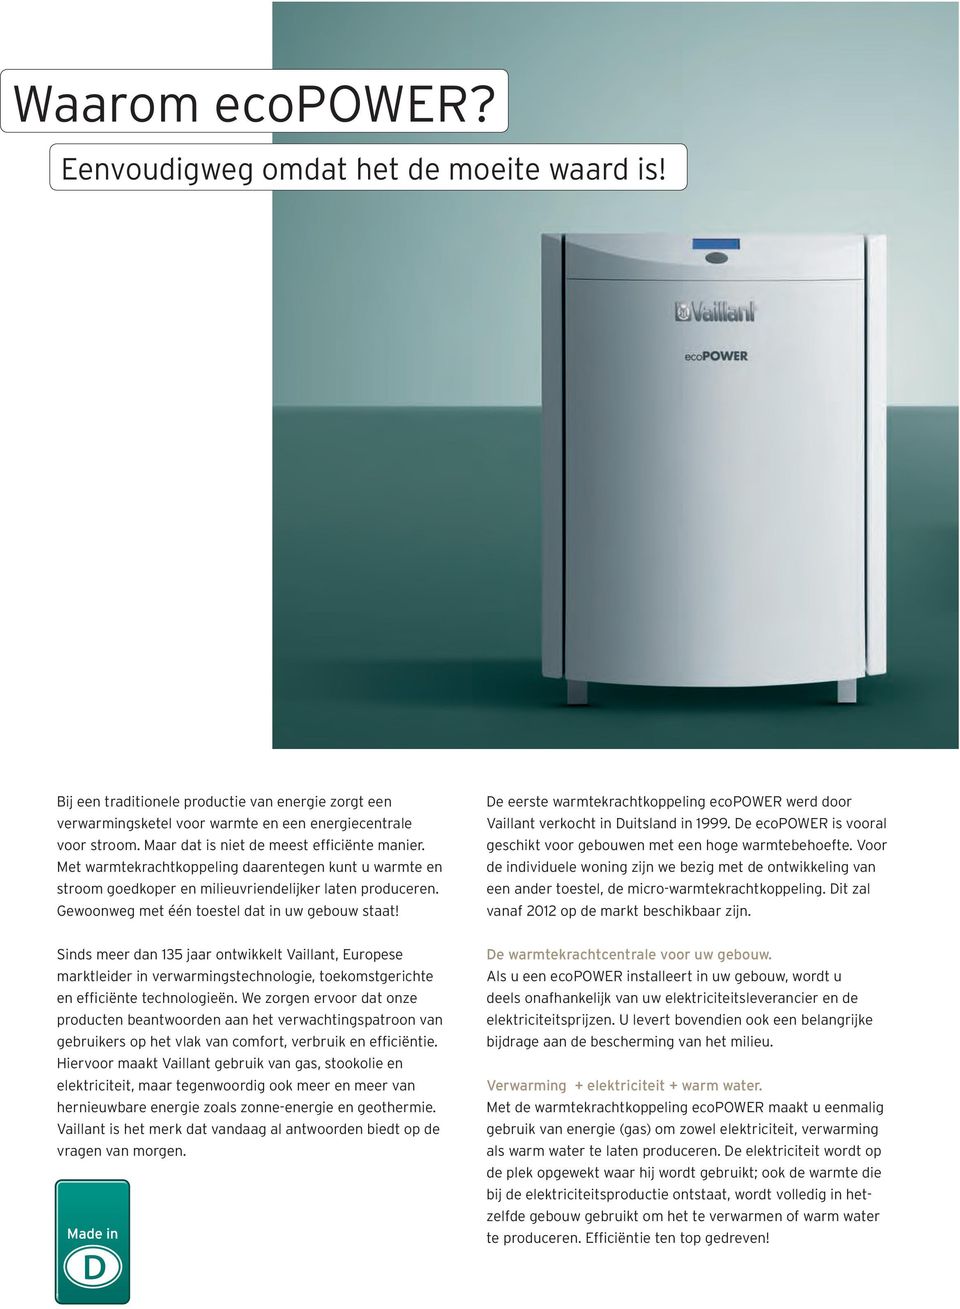 Gewoonweg met één toestel dat in uw gebouw staat! De eerste warmtekrachtkoppeling ecopower werd door Vaillant verkocht in Duitsland in 1999.